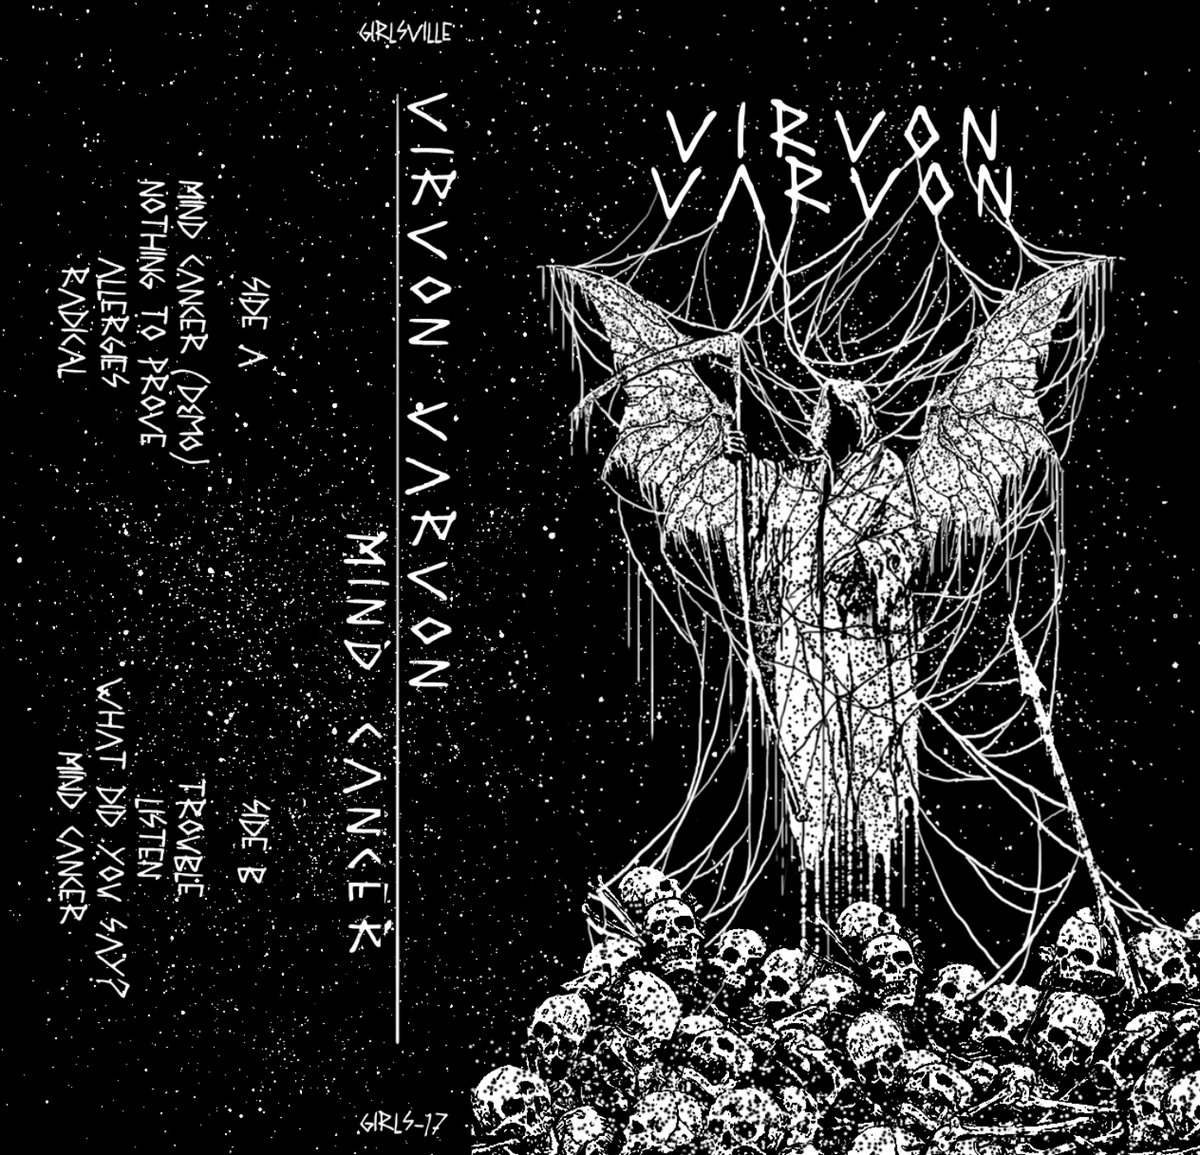 Virvon Varvon cover